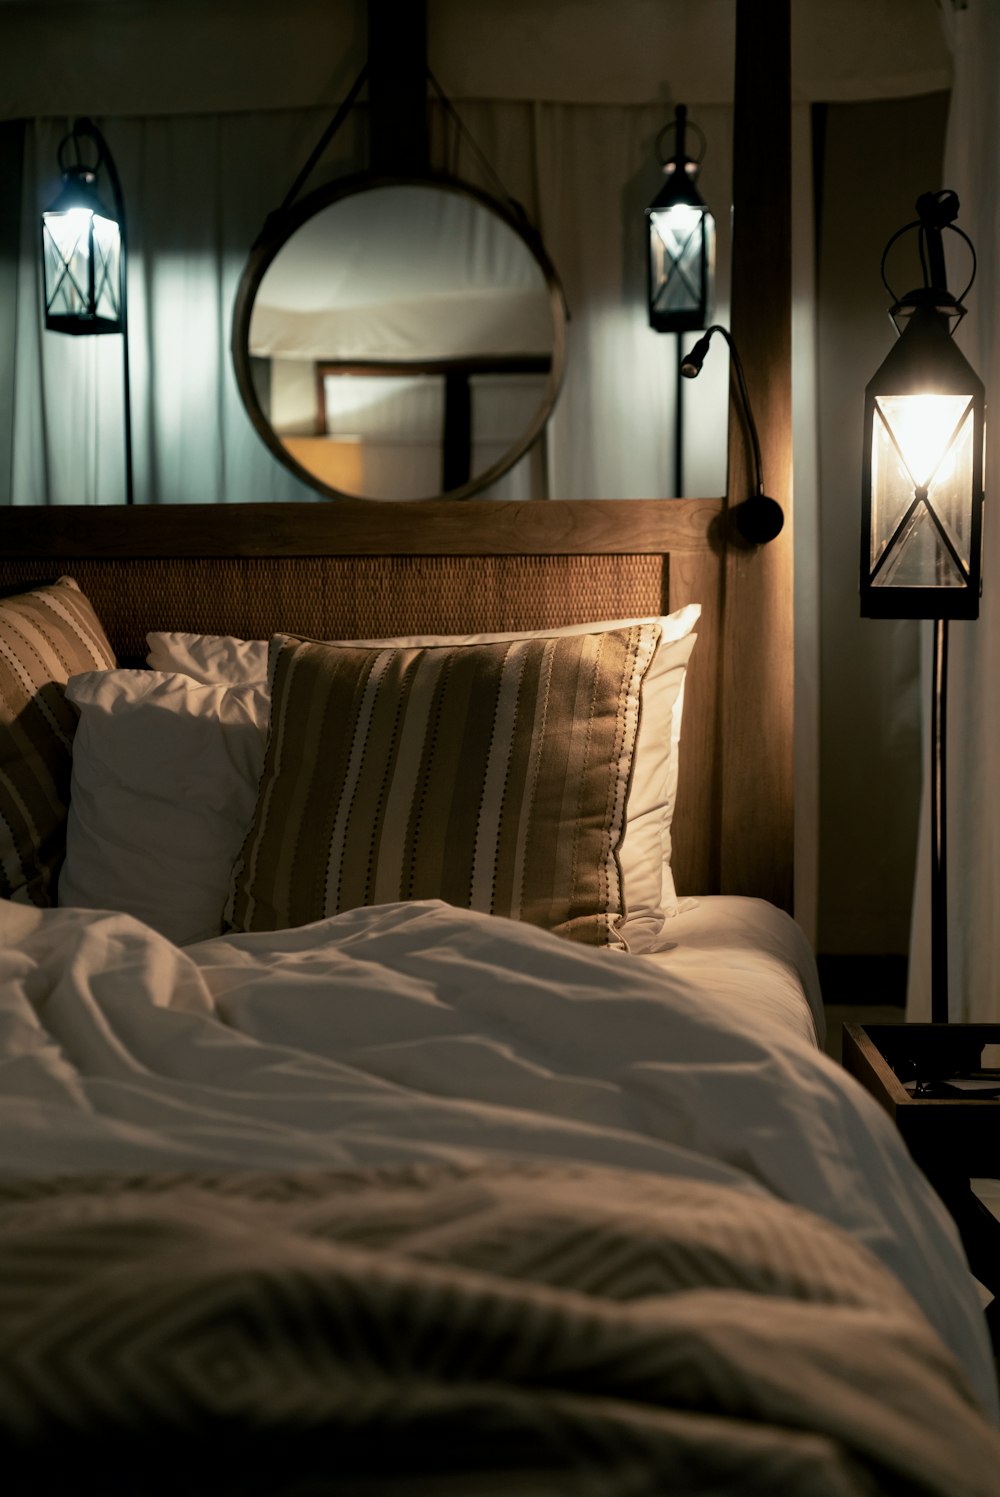 침대에 여러 가지 빛깔의 베개와 방 안에 조명이 켜진 펜던트 램프